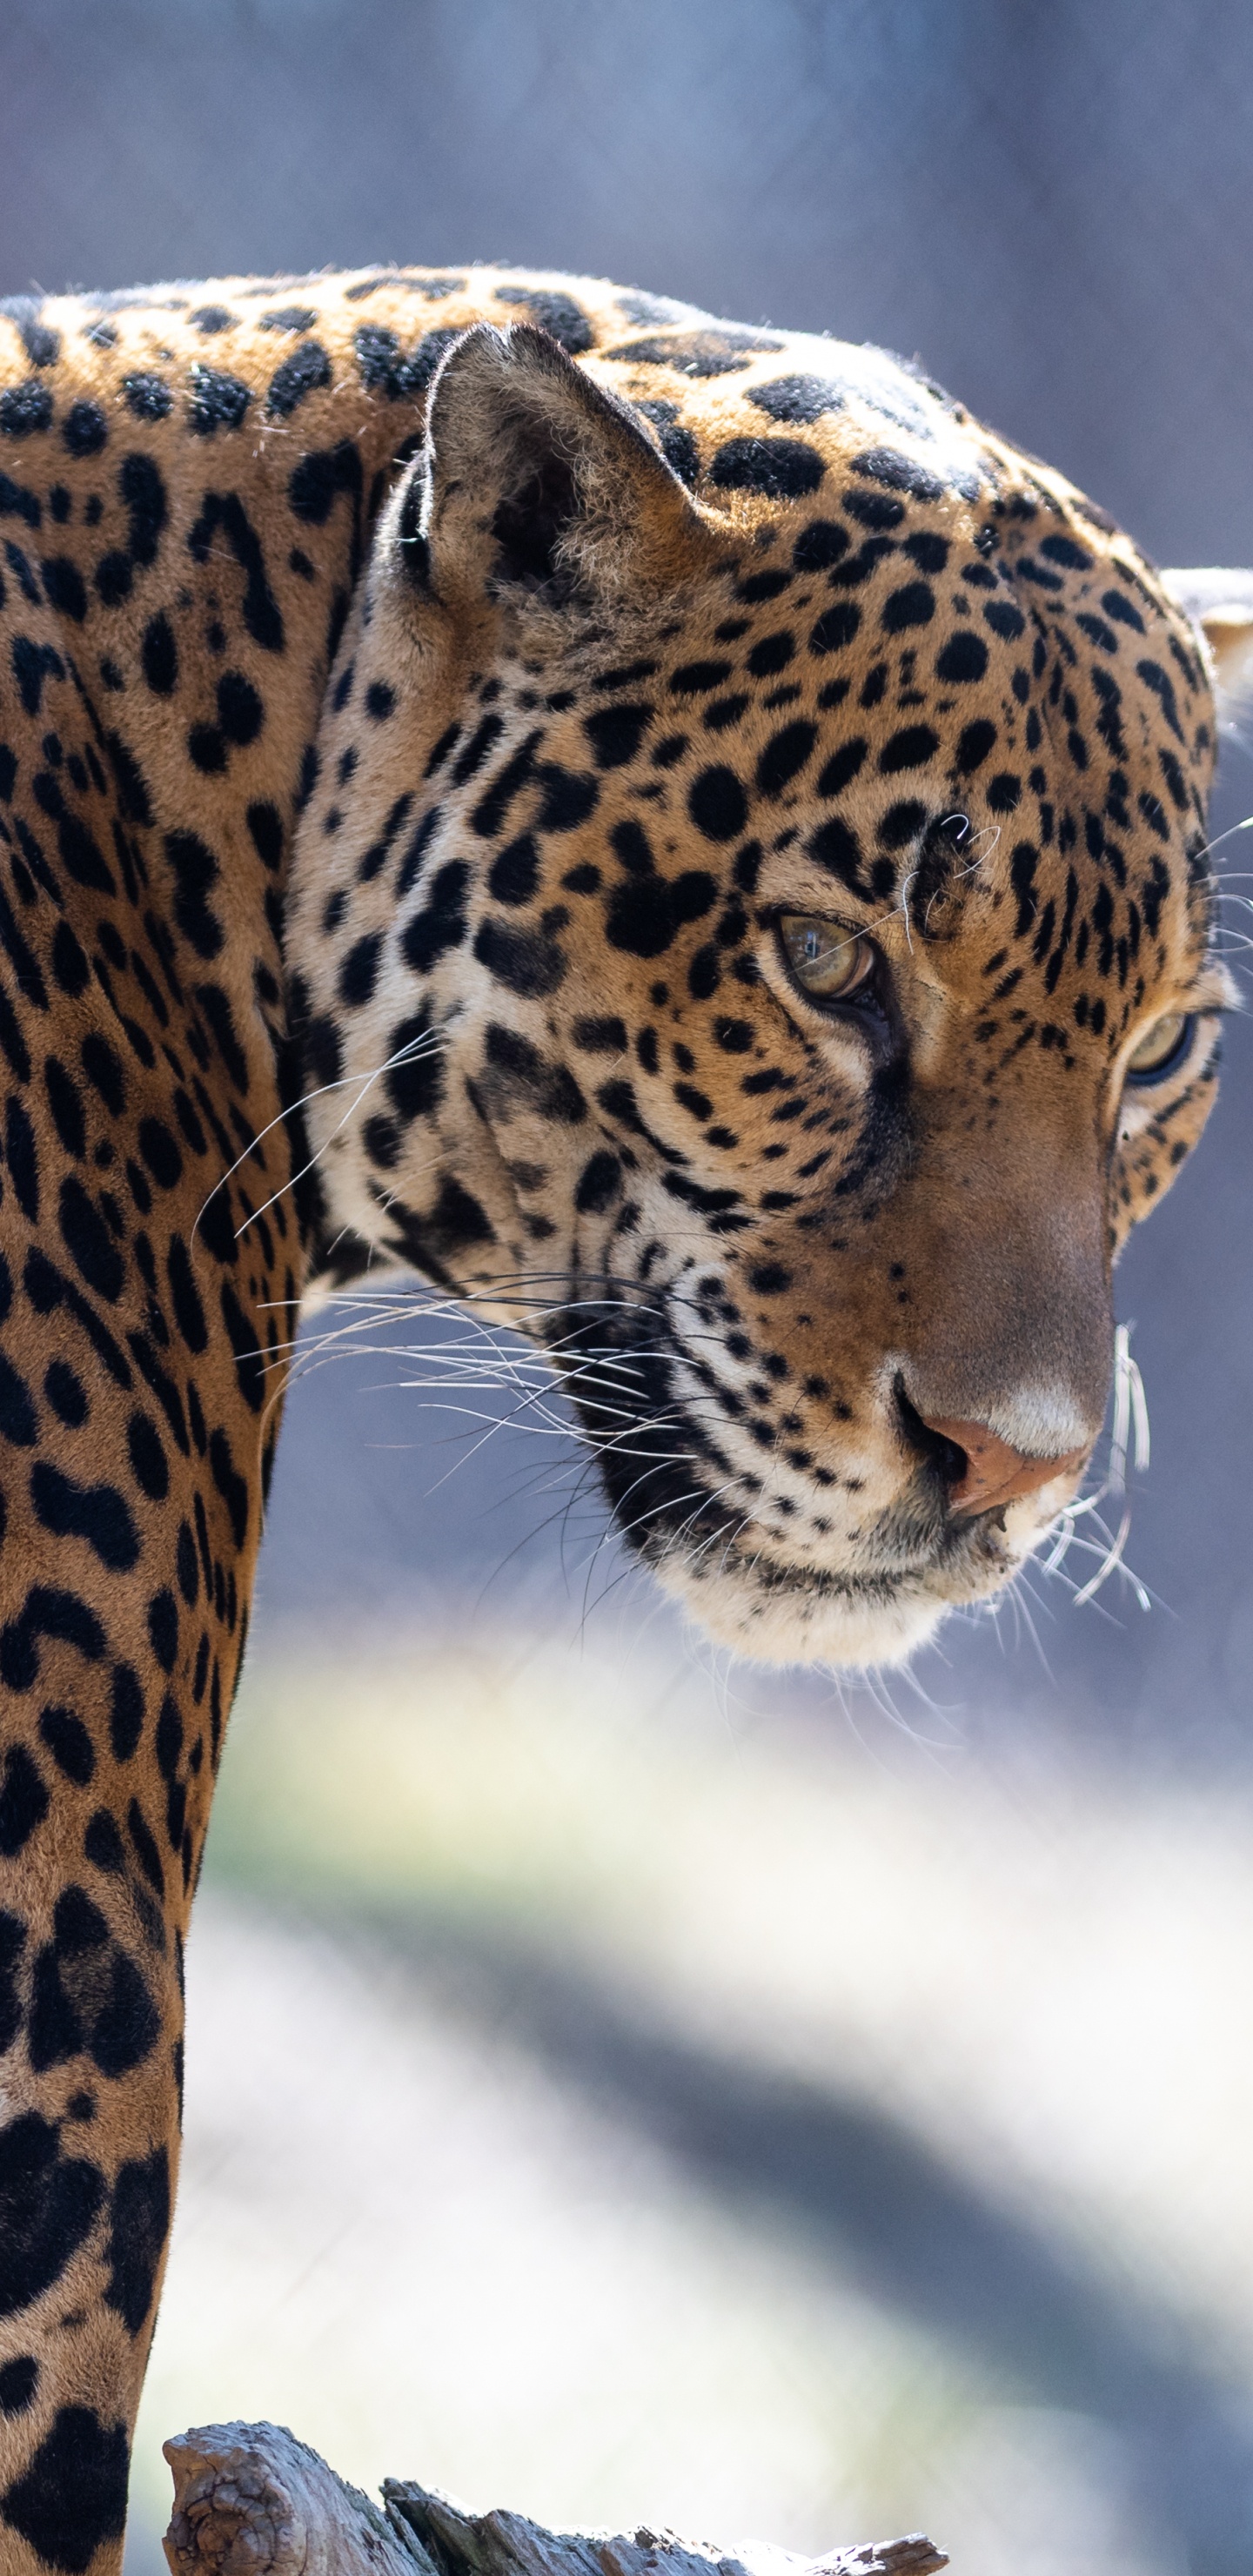 Leopardo Marrón y Negro en Fotografía de Cerca. Wallpaper in 1440x2960 Resolution